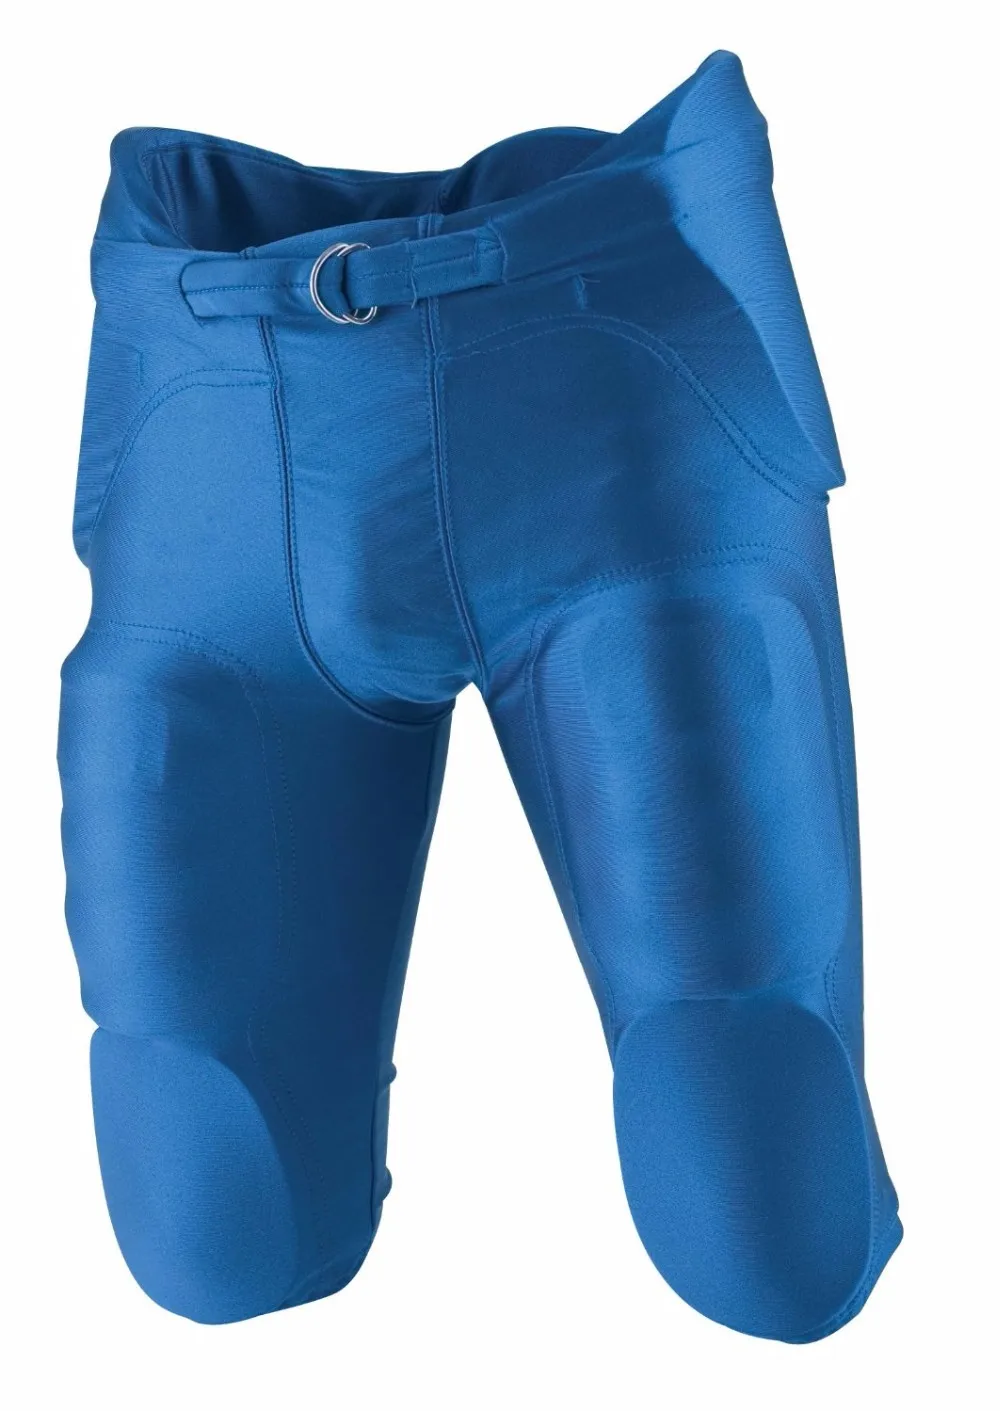 adidas Padded Pants - Blue, Kids' Football